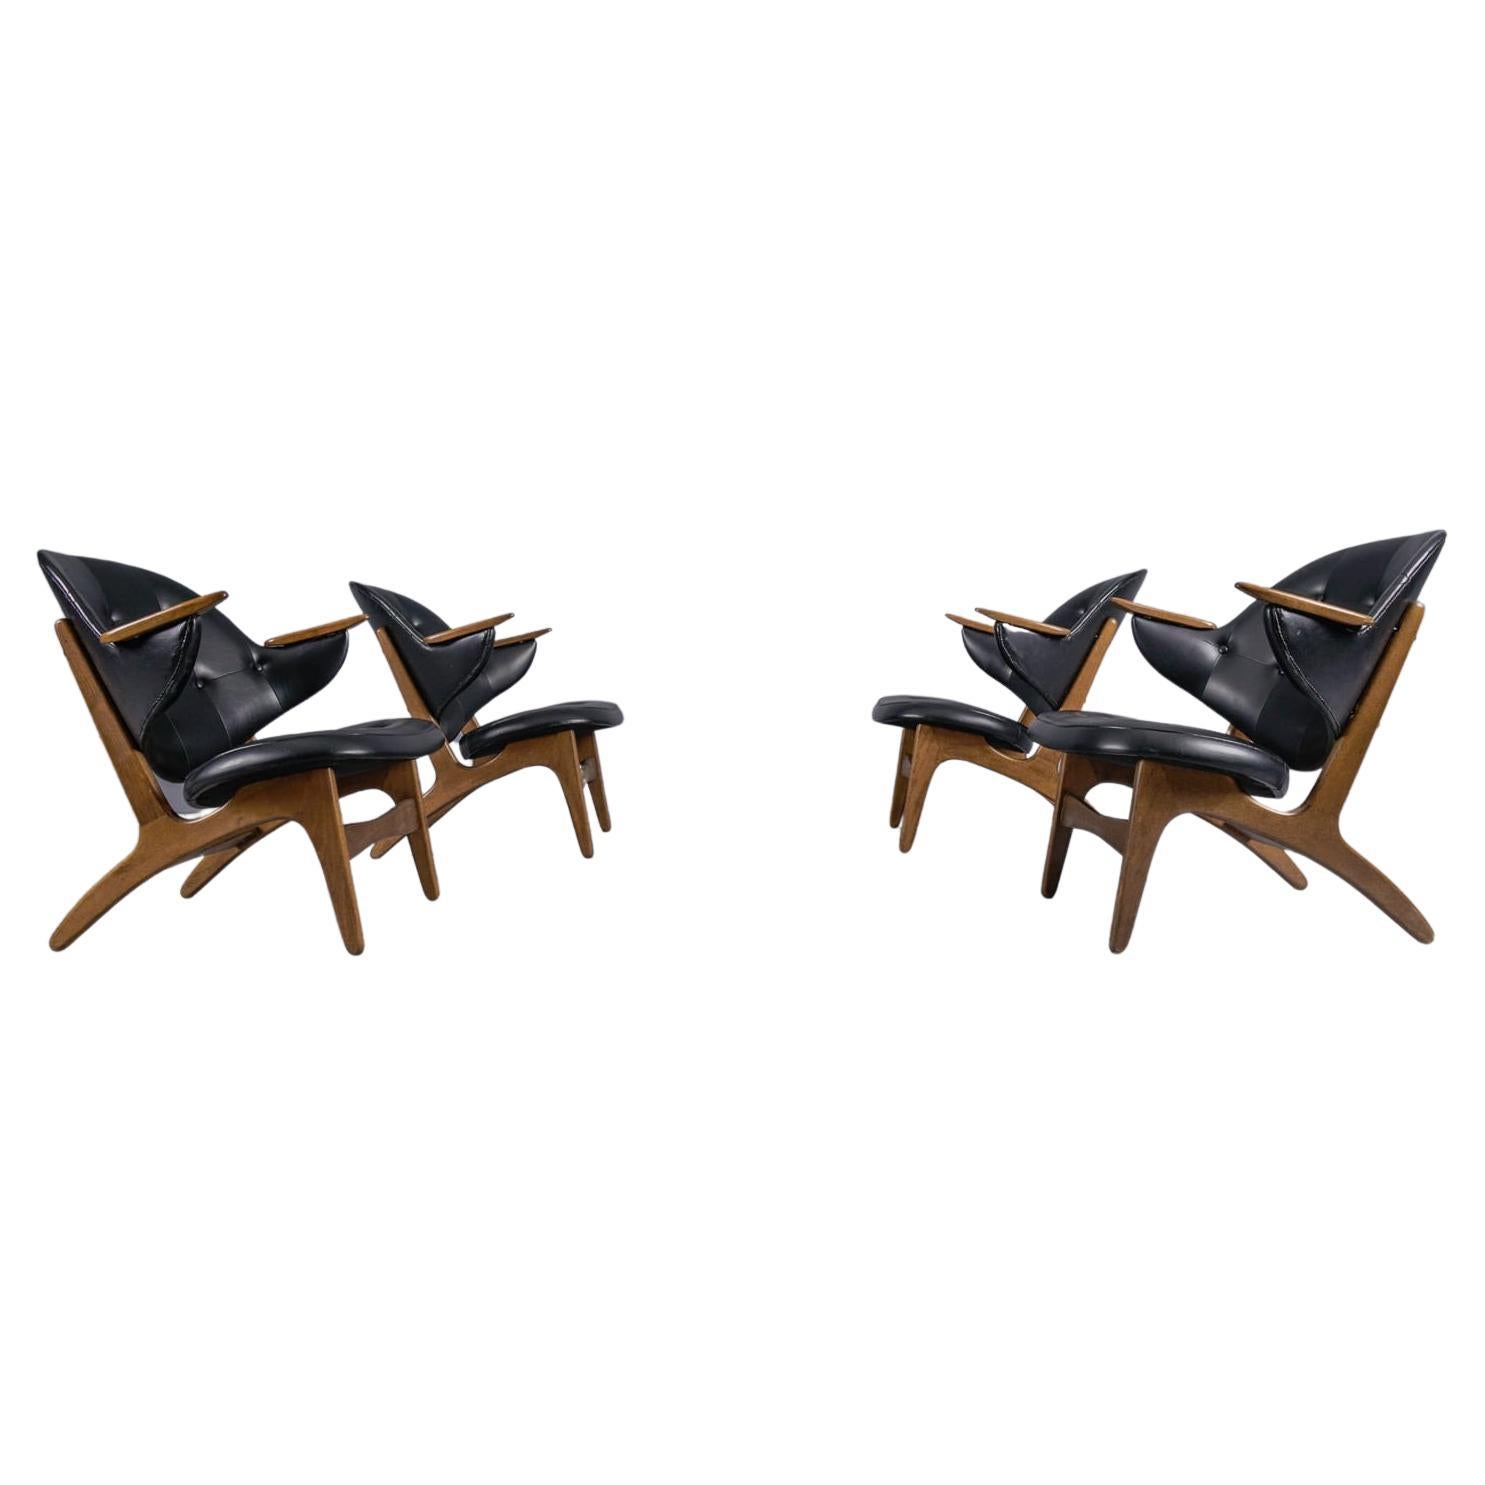 Ensemble rare de 4 fauteuils danois Modèle 33 conçus par Carl Edward Matthes, années 1950